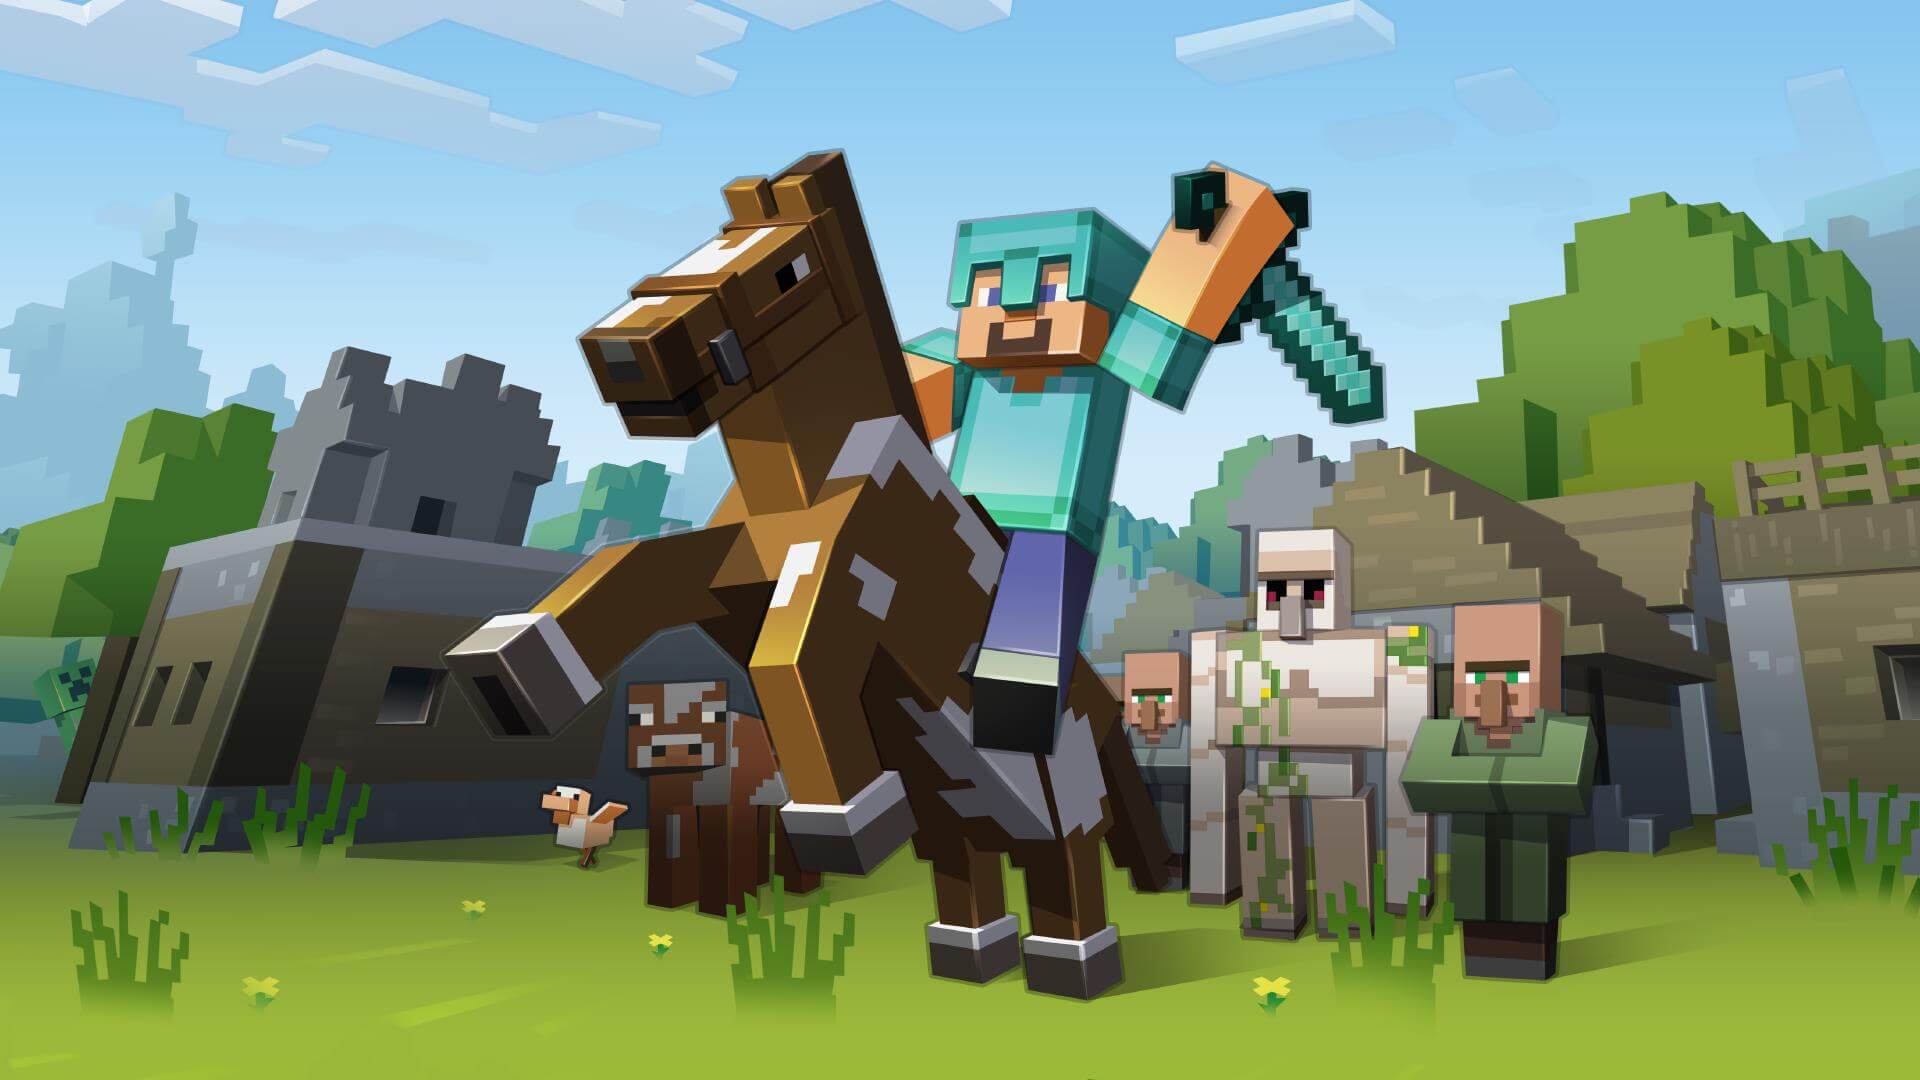 Minecraft wallpaper mobs cung cấp cho bạn những hình ảnh đặc sắc và sống động về các con mob trong trò chơi Minecraft. Hãy đón xem để tận hưởng những giây phút thú vị cùng Minecraft wallpaper mobs.